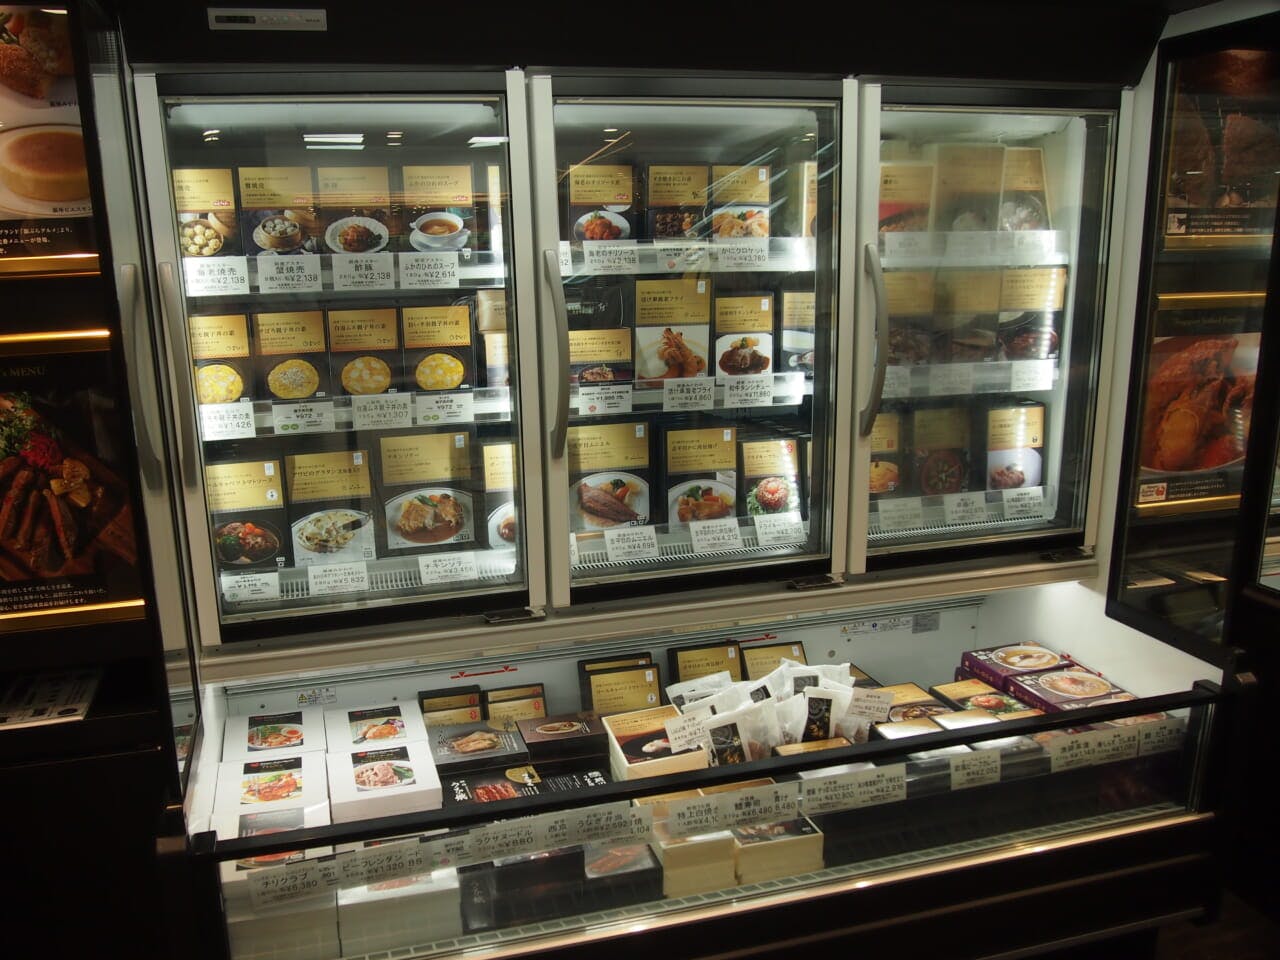 松屋銀座本店地下２階の冷凍食品売場に誕生した「ギンザフローズングルメ」